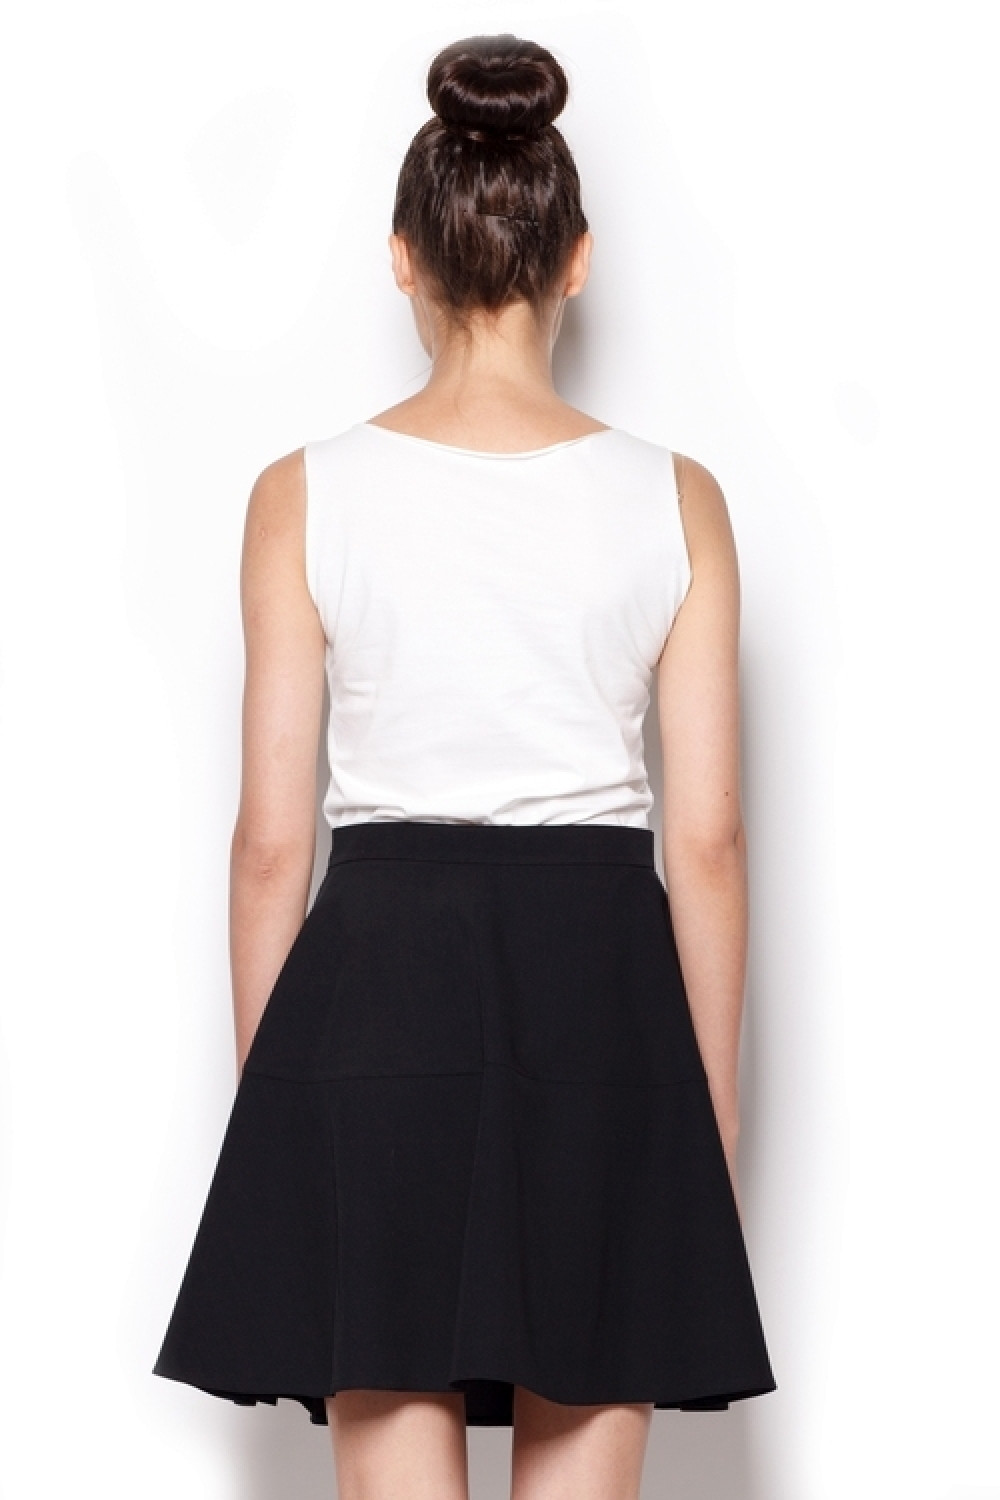 Dámská sukně model 4267198 black černá M - Figl